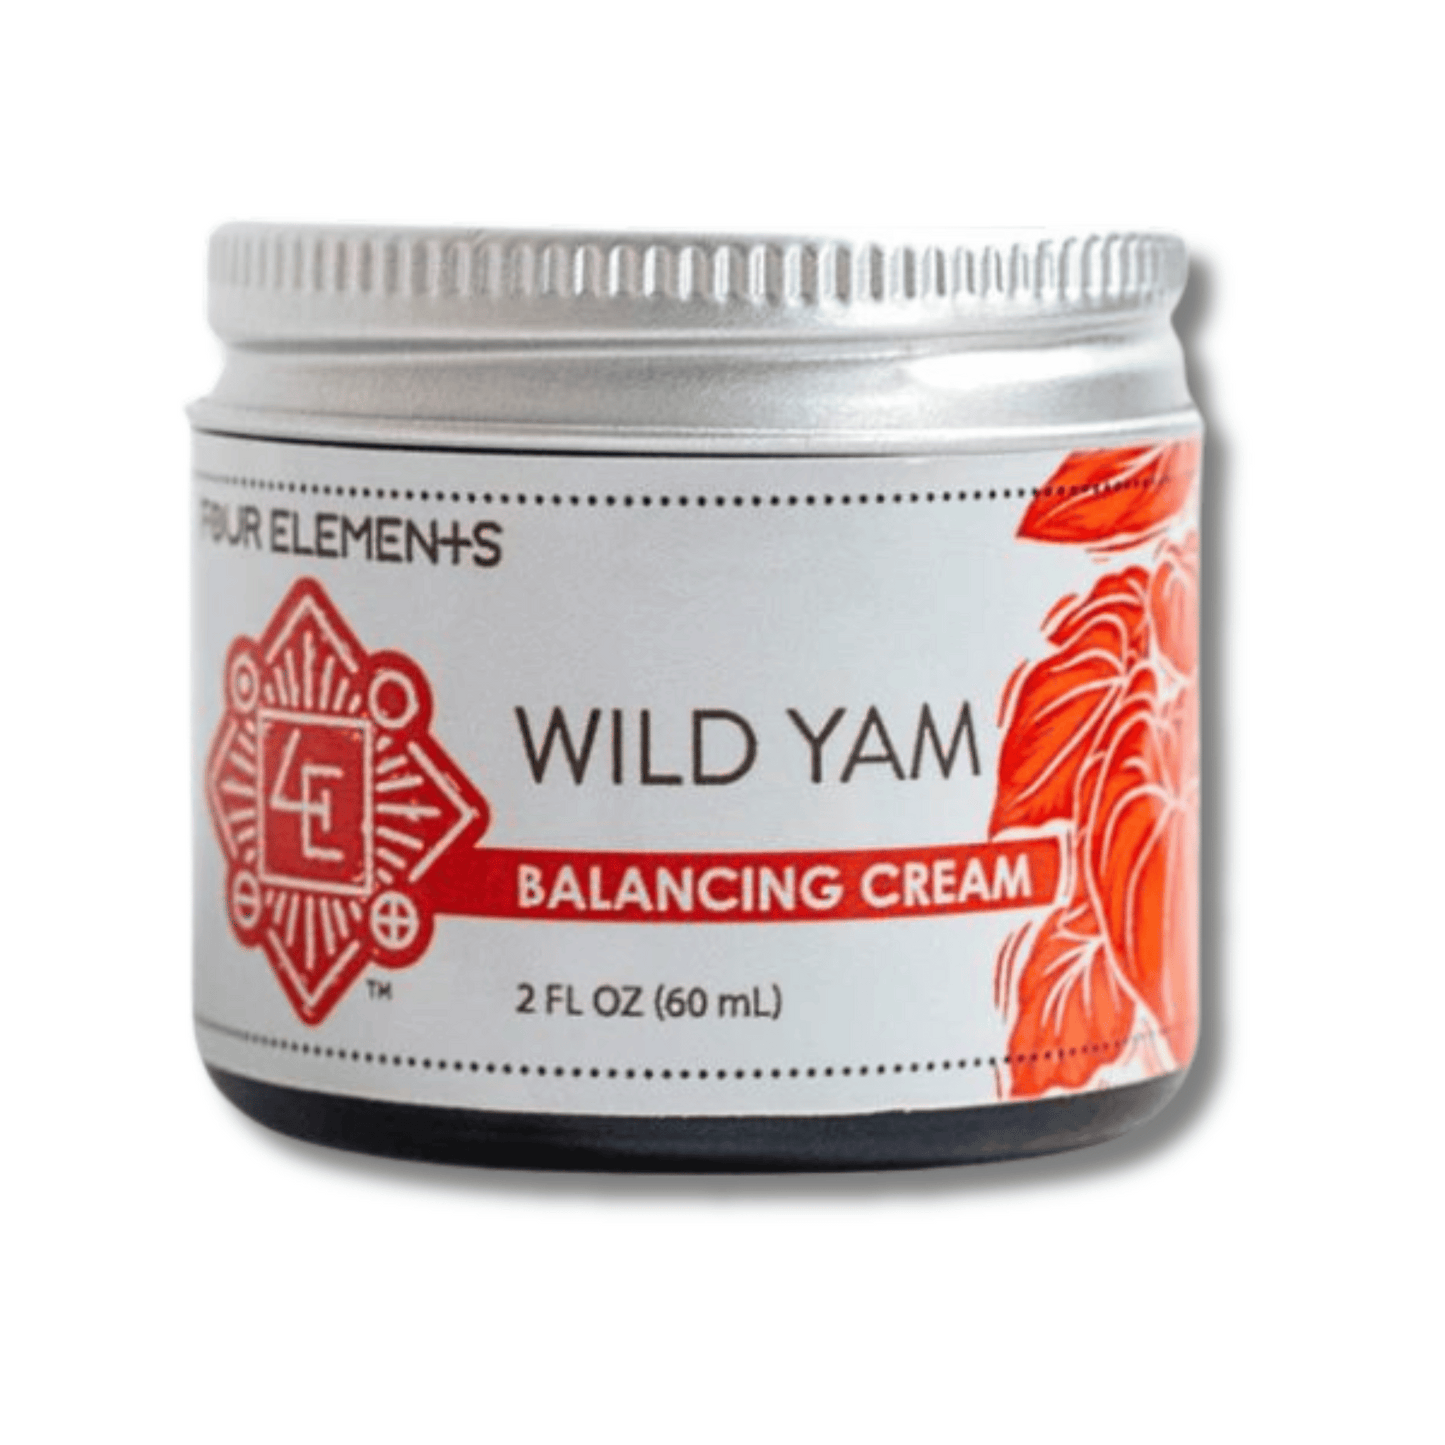 Primary Image of Wild Yam Balancing Cream